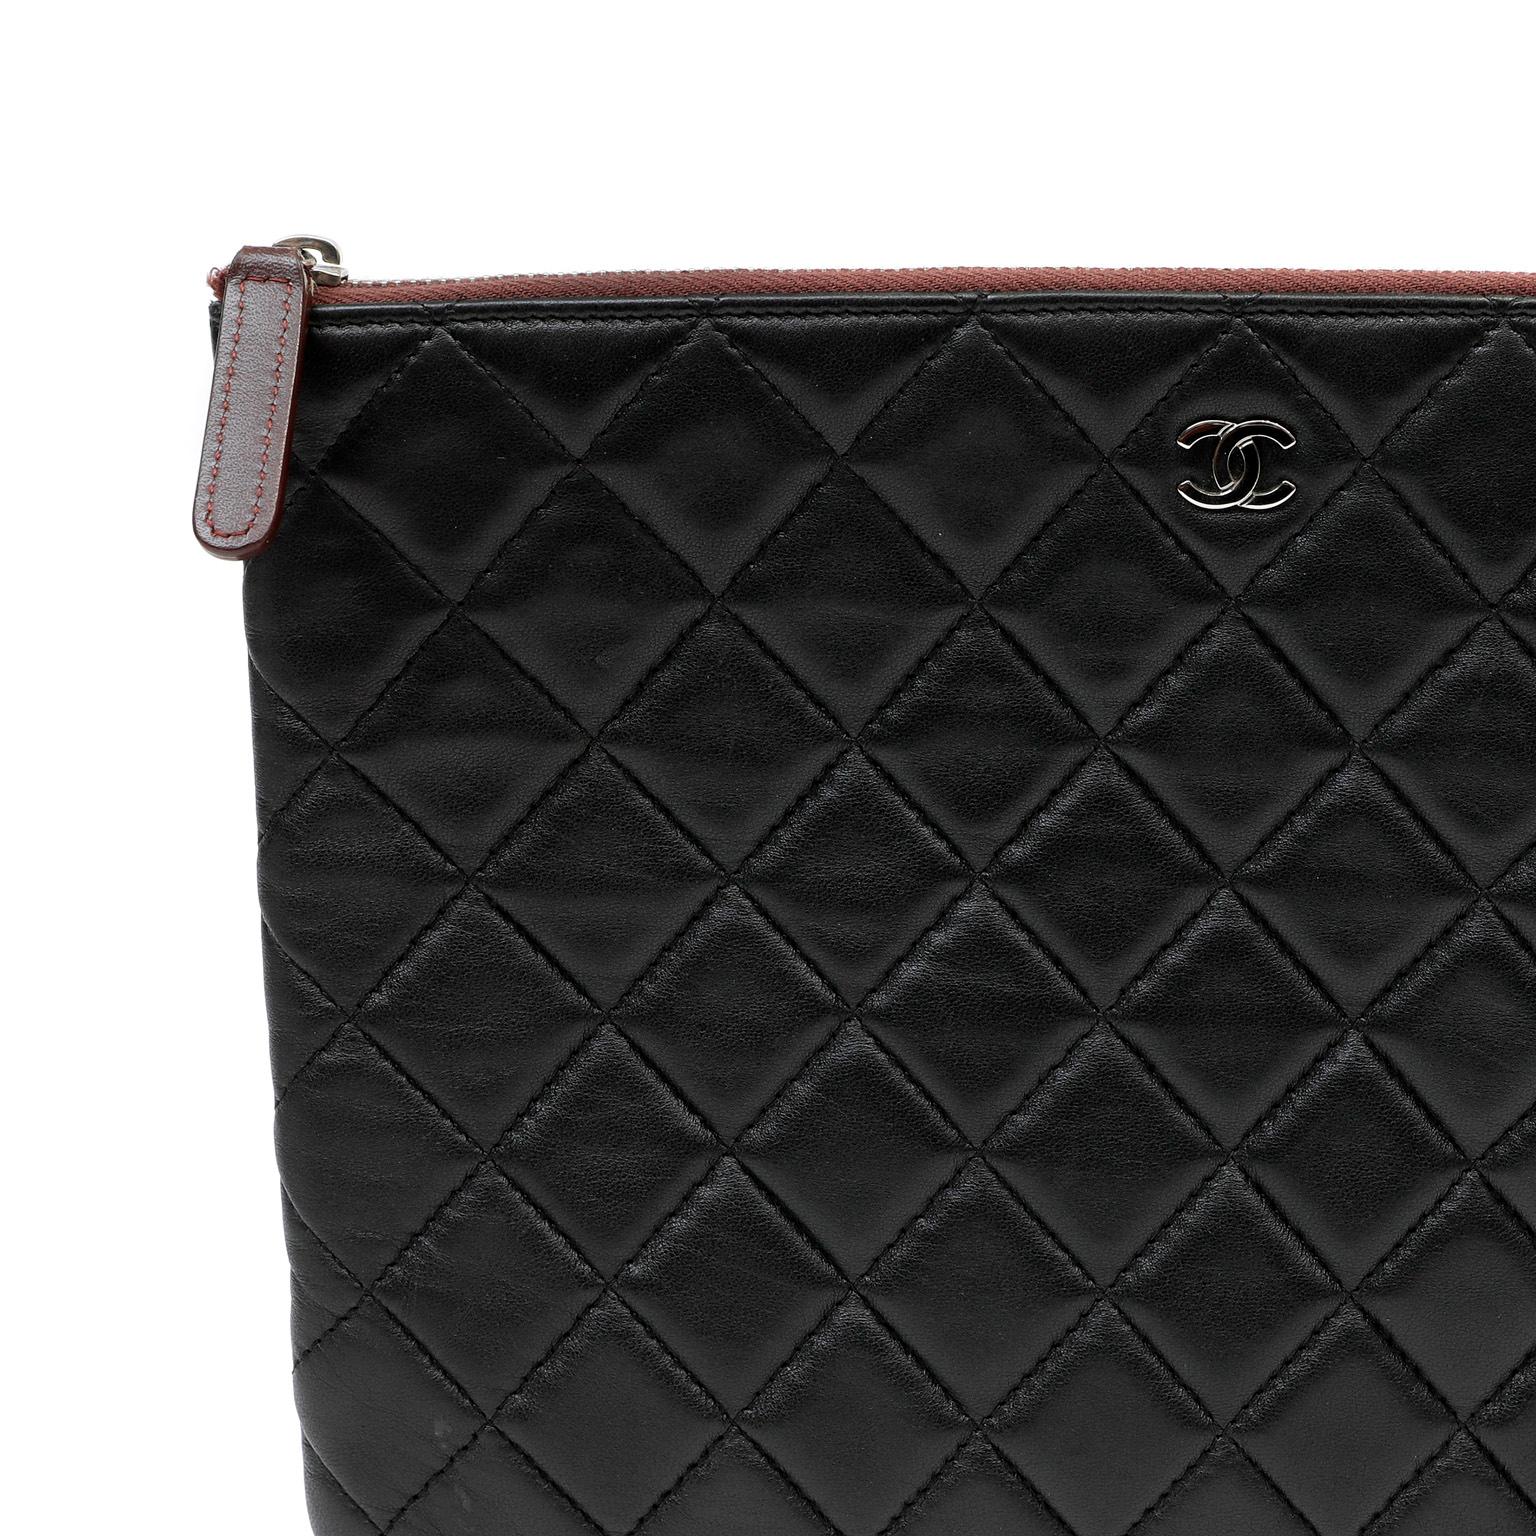 Women's or Men's Chanel Black Lambskin Classic Case For Sale